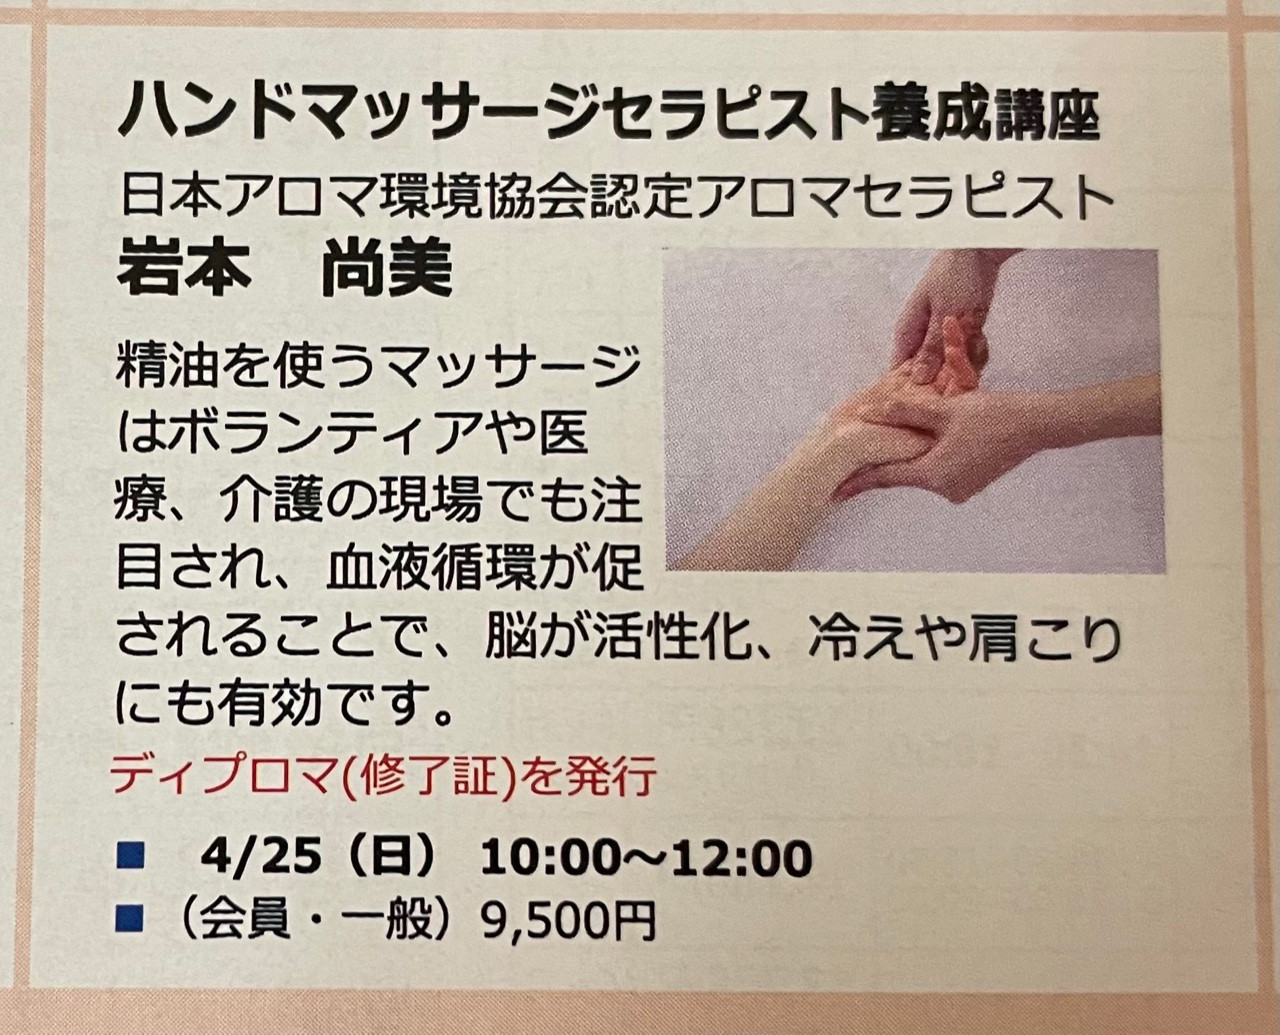 【募集】NHK福山教室にて「ハンドマッサージセラピスト養成講座」を開催します。